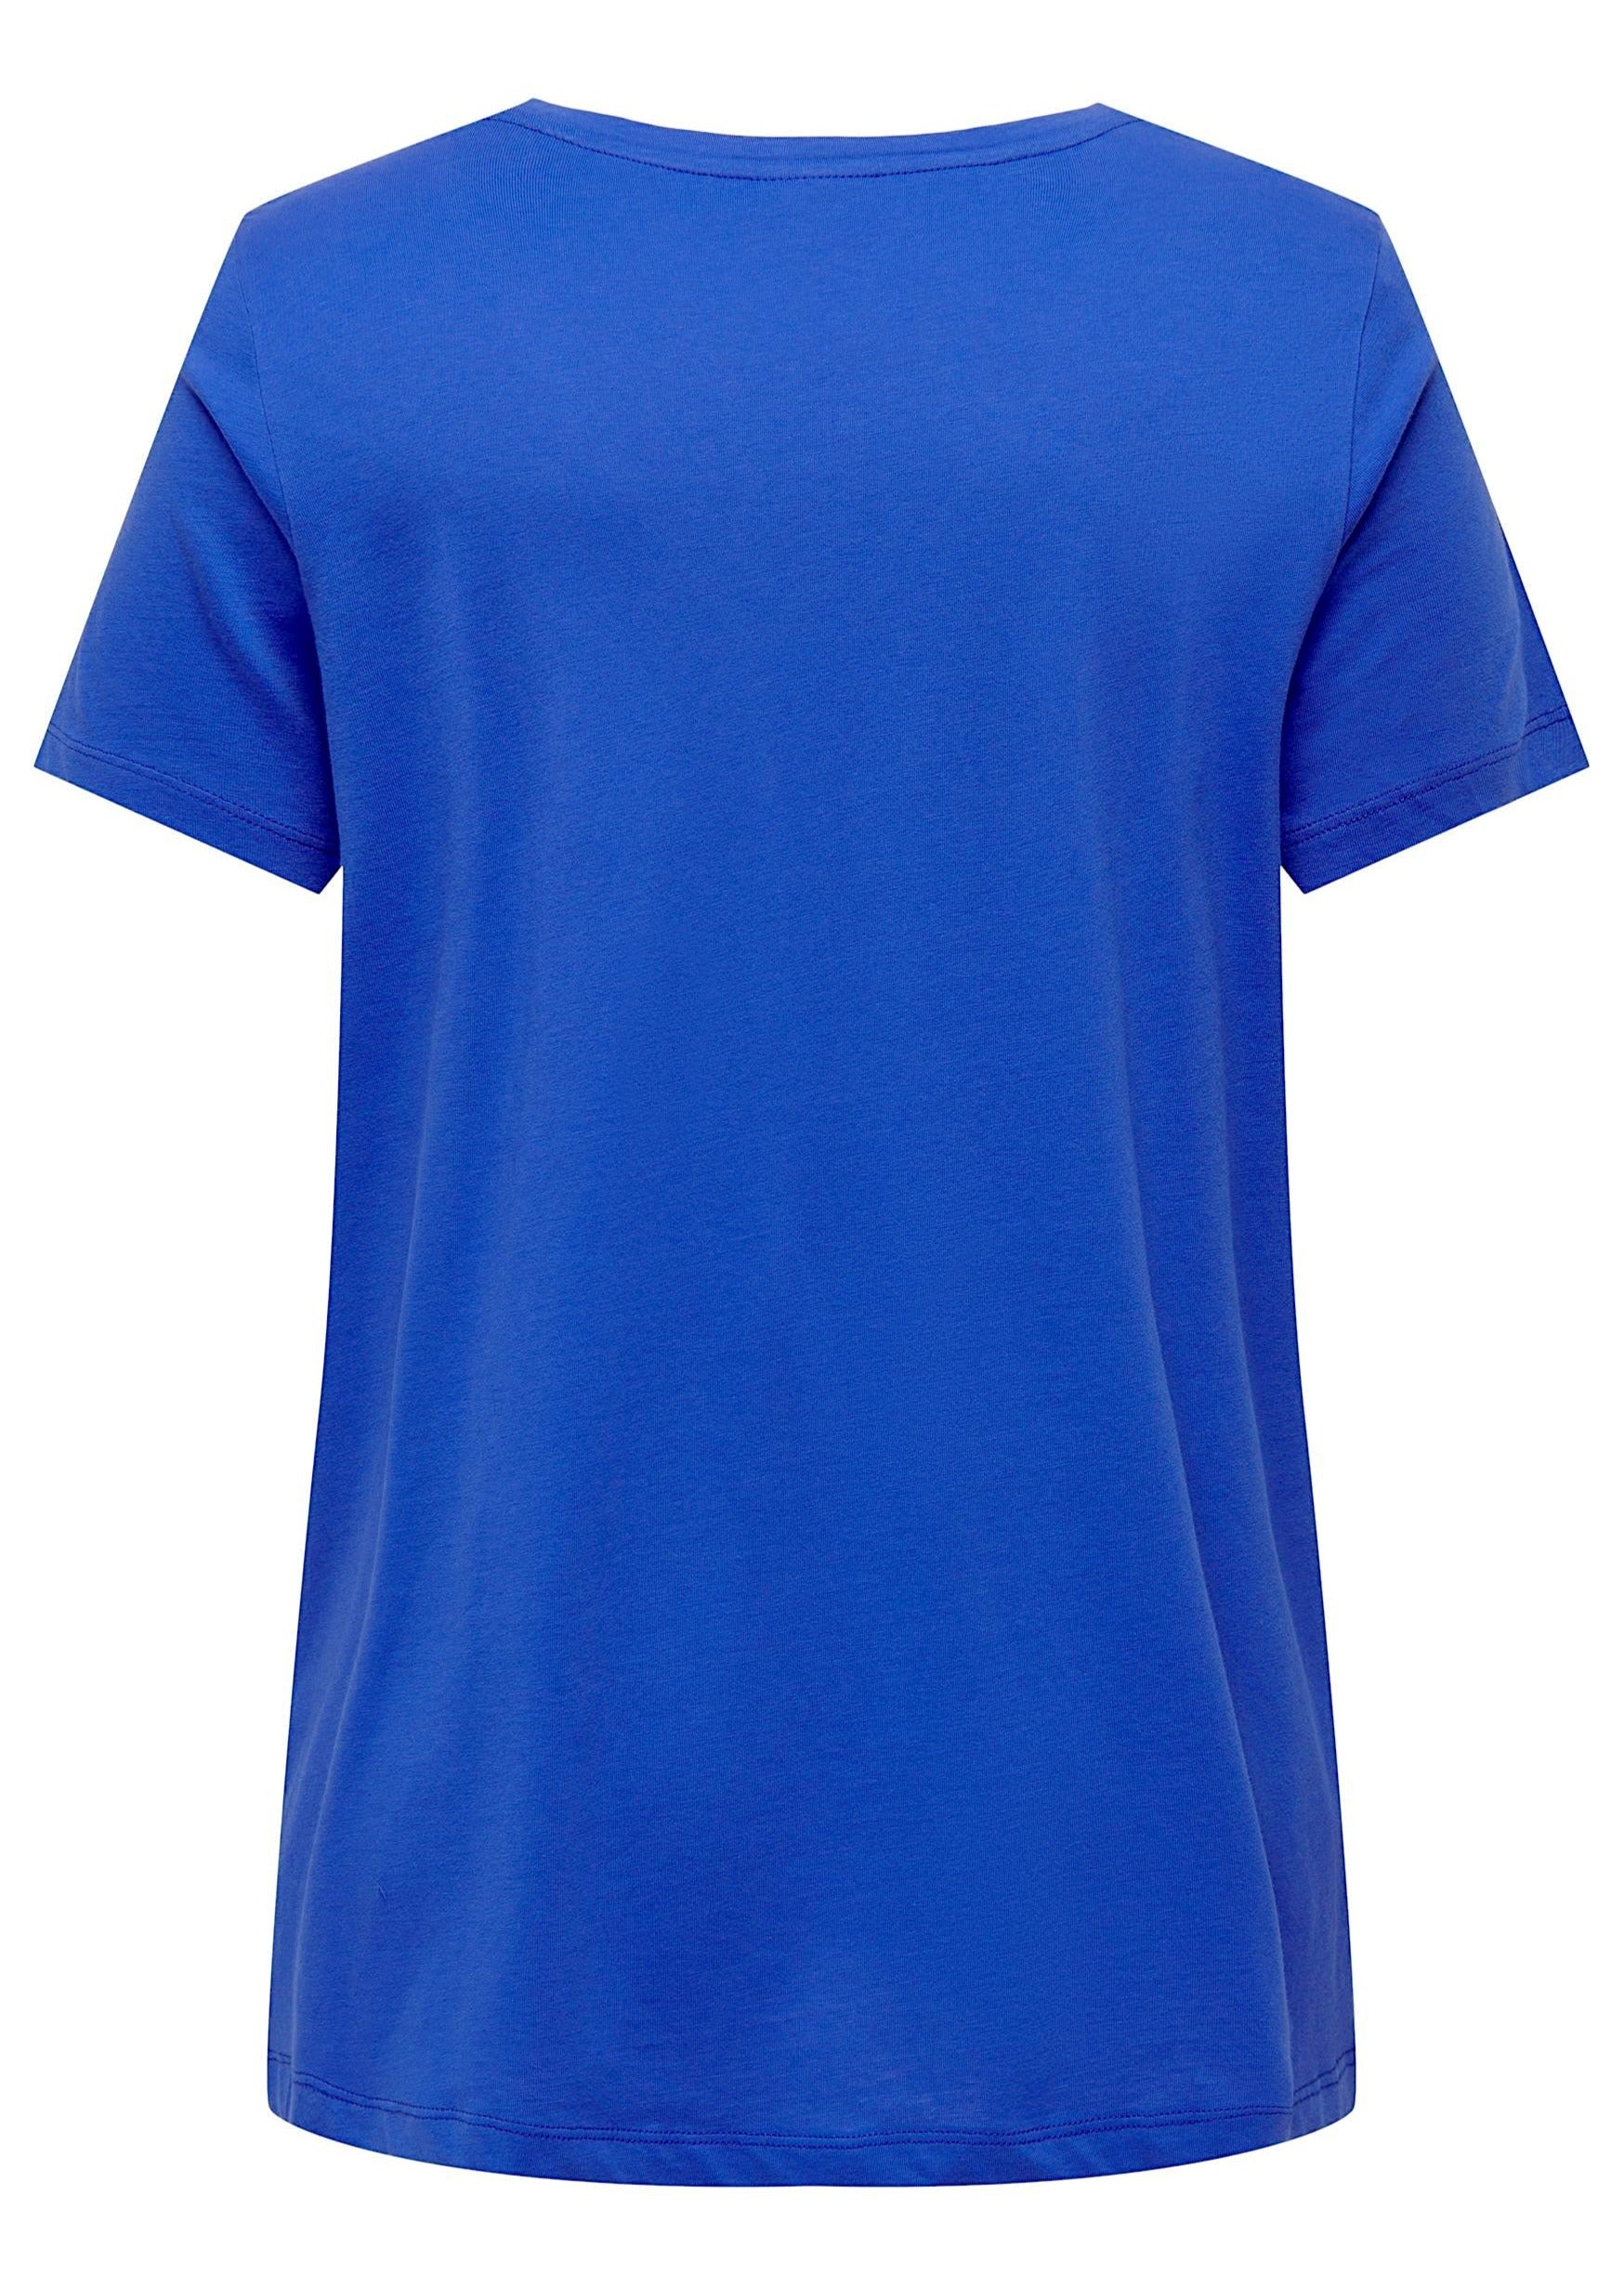 Bonnie T-shirt Blå